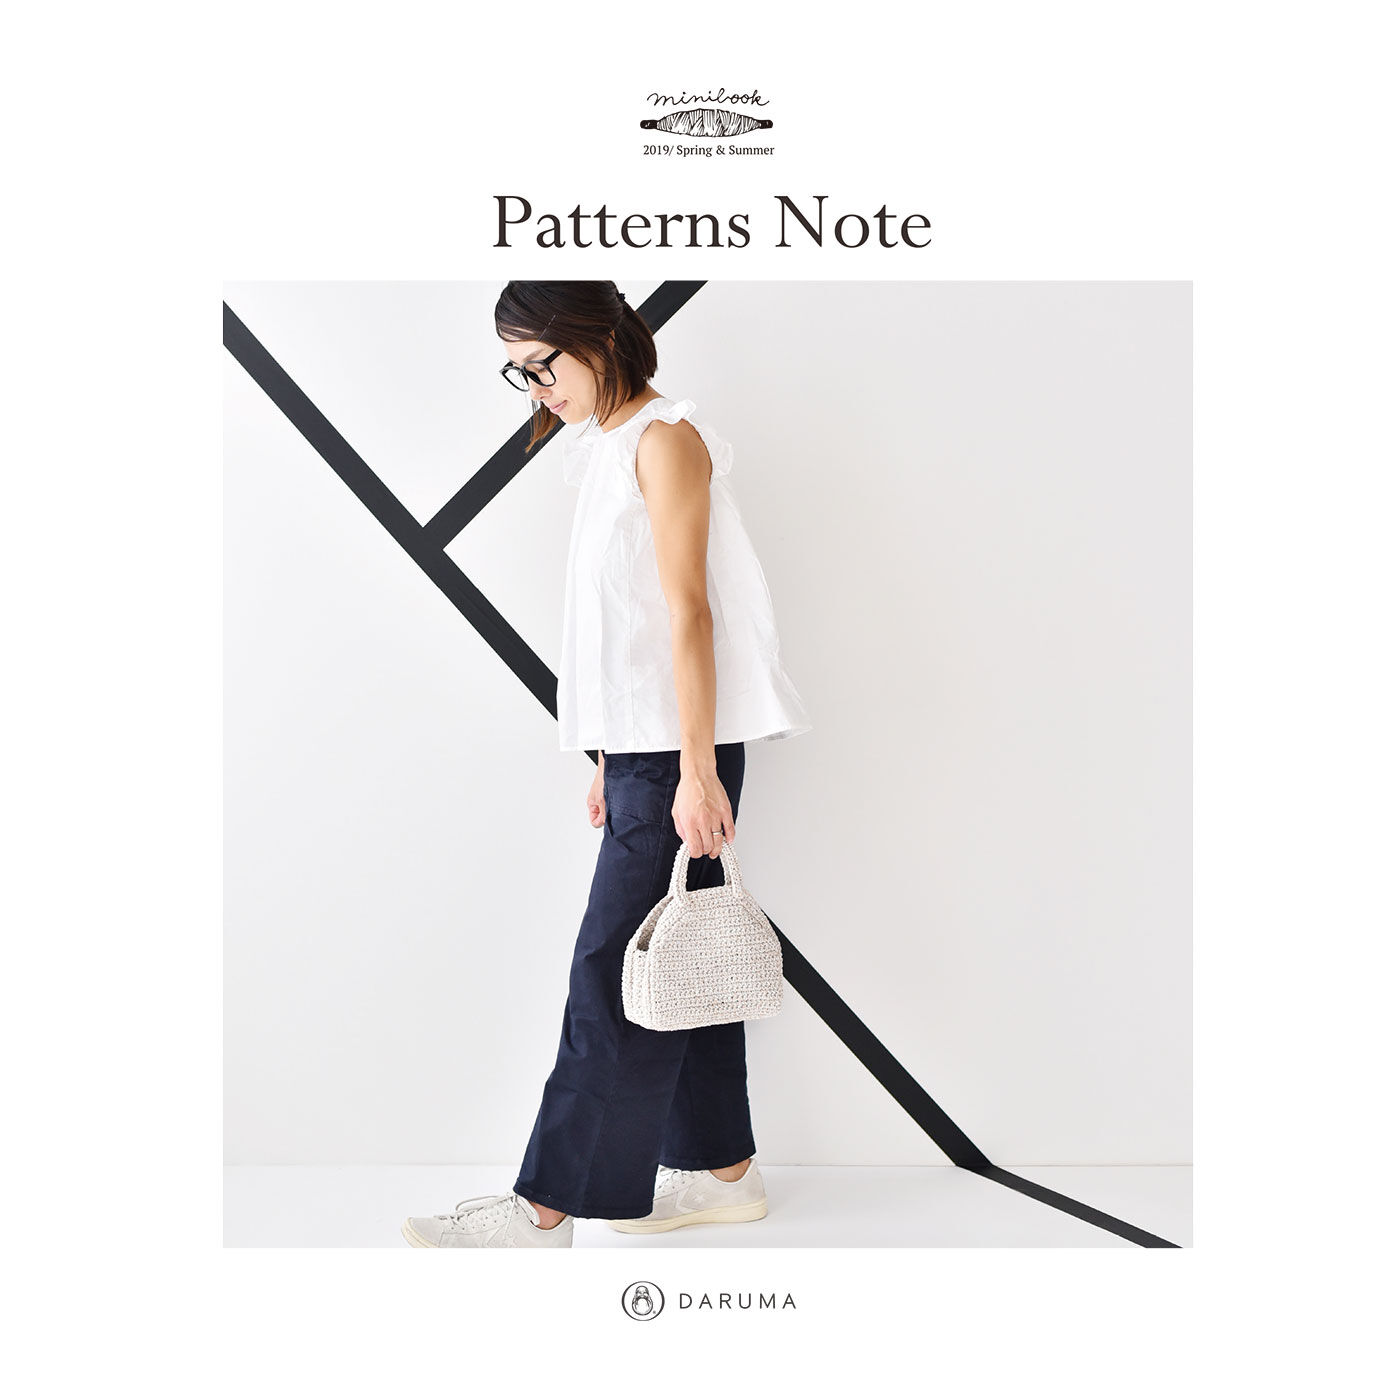 Couturier special|透かし編みバッグが編める　鮮やかプラコードの糸とミニブック「ＰａｔｔｅｒｎｓＮｏｔｅ」|●プラコード2玉と、小冊子「PatternsNote」をセットでお届け。